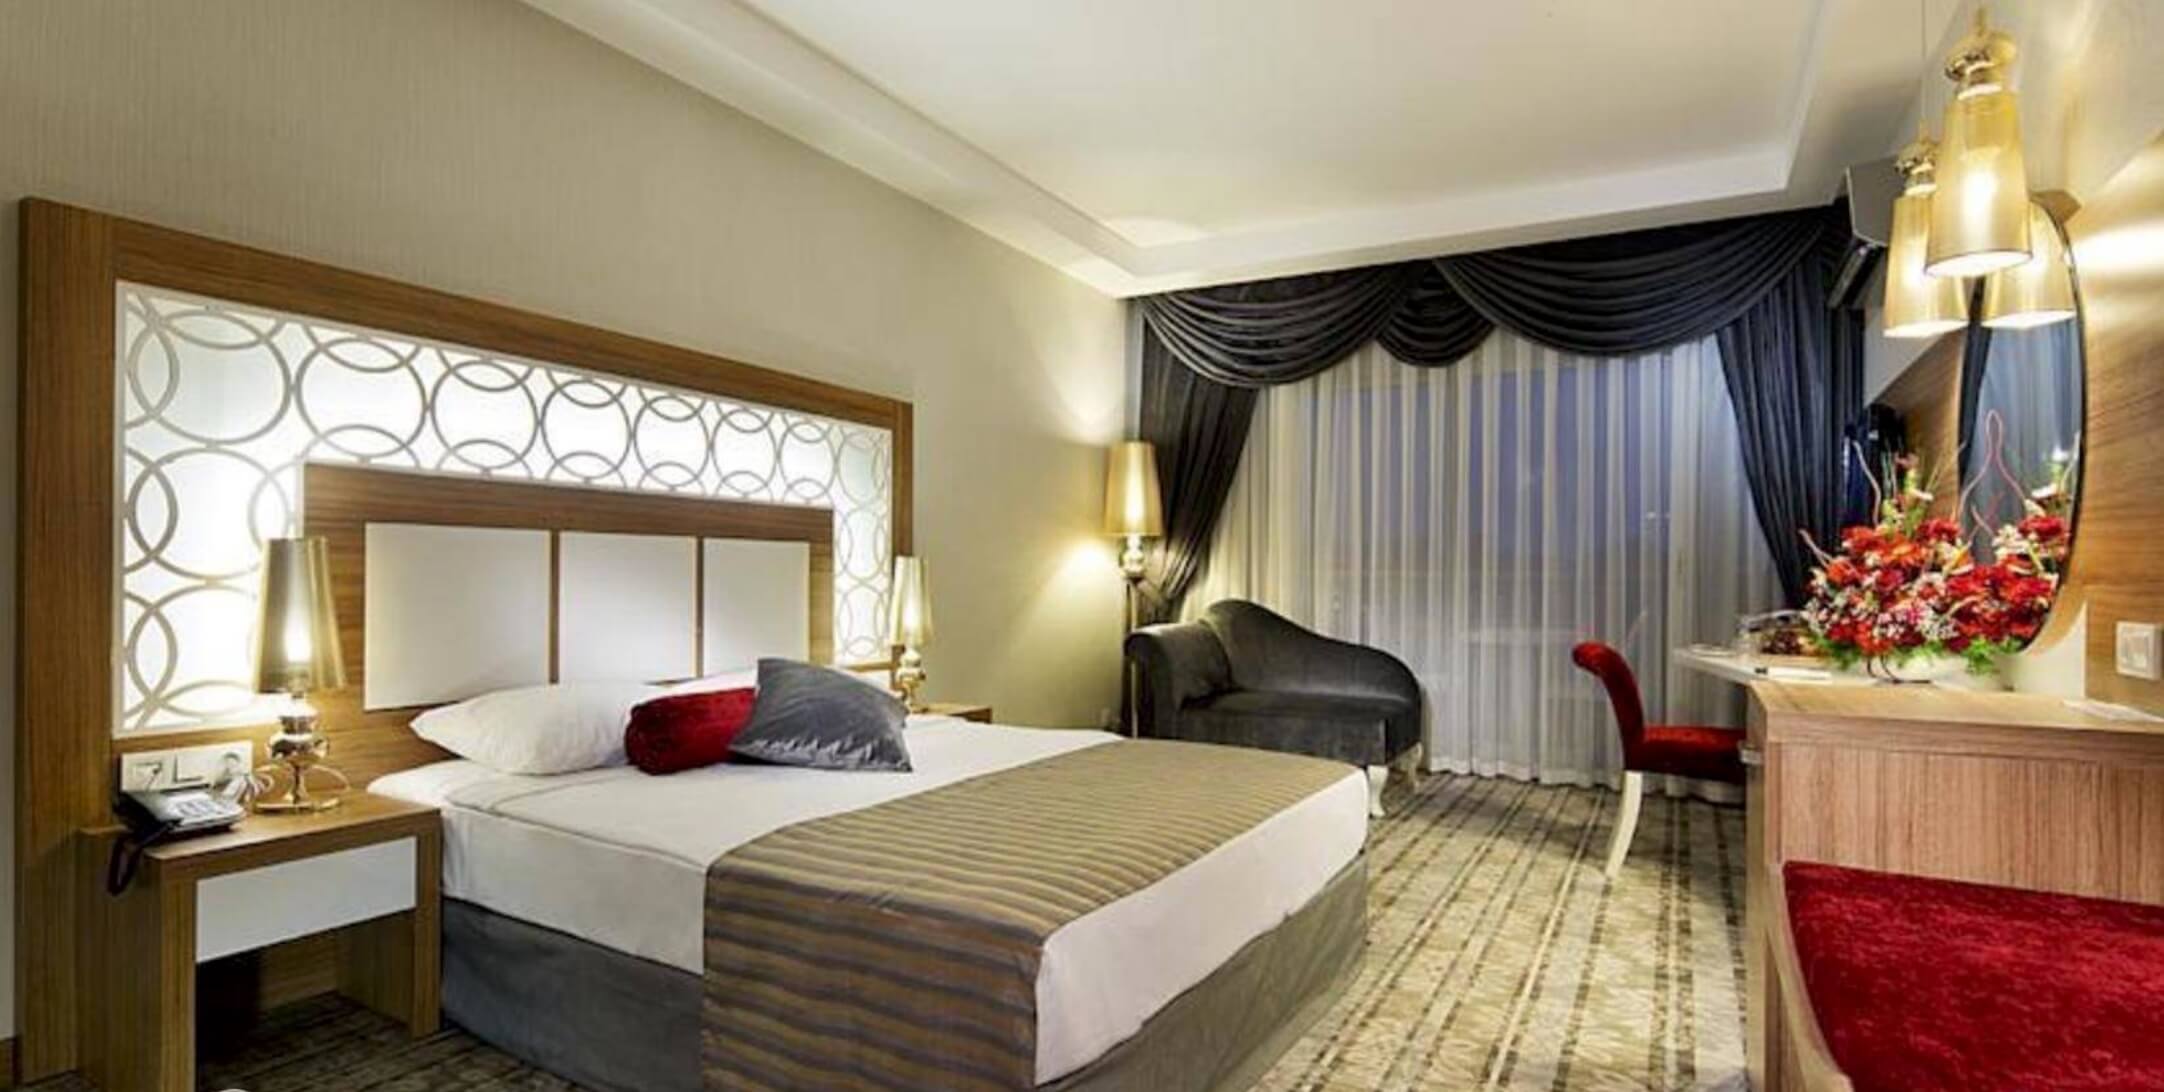 Тур в Аланию в отель Justiniano Deluxe Resort 5* (Турция) на 7 ночей с 26.01.19 от 33 529 рублей (AL) на двоих